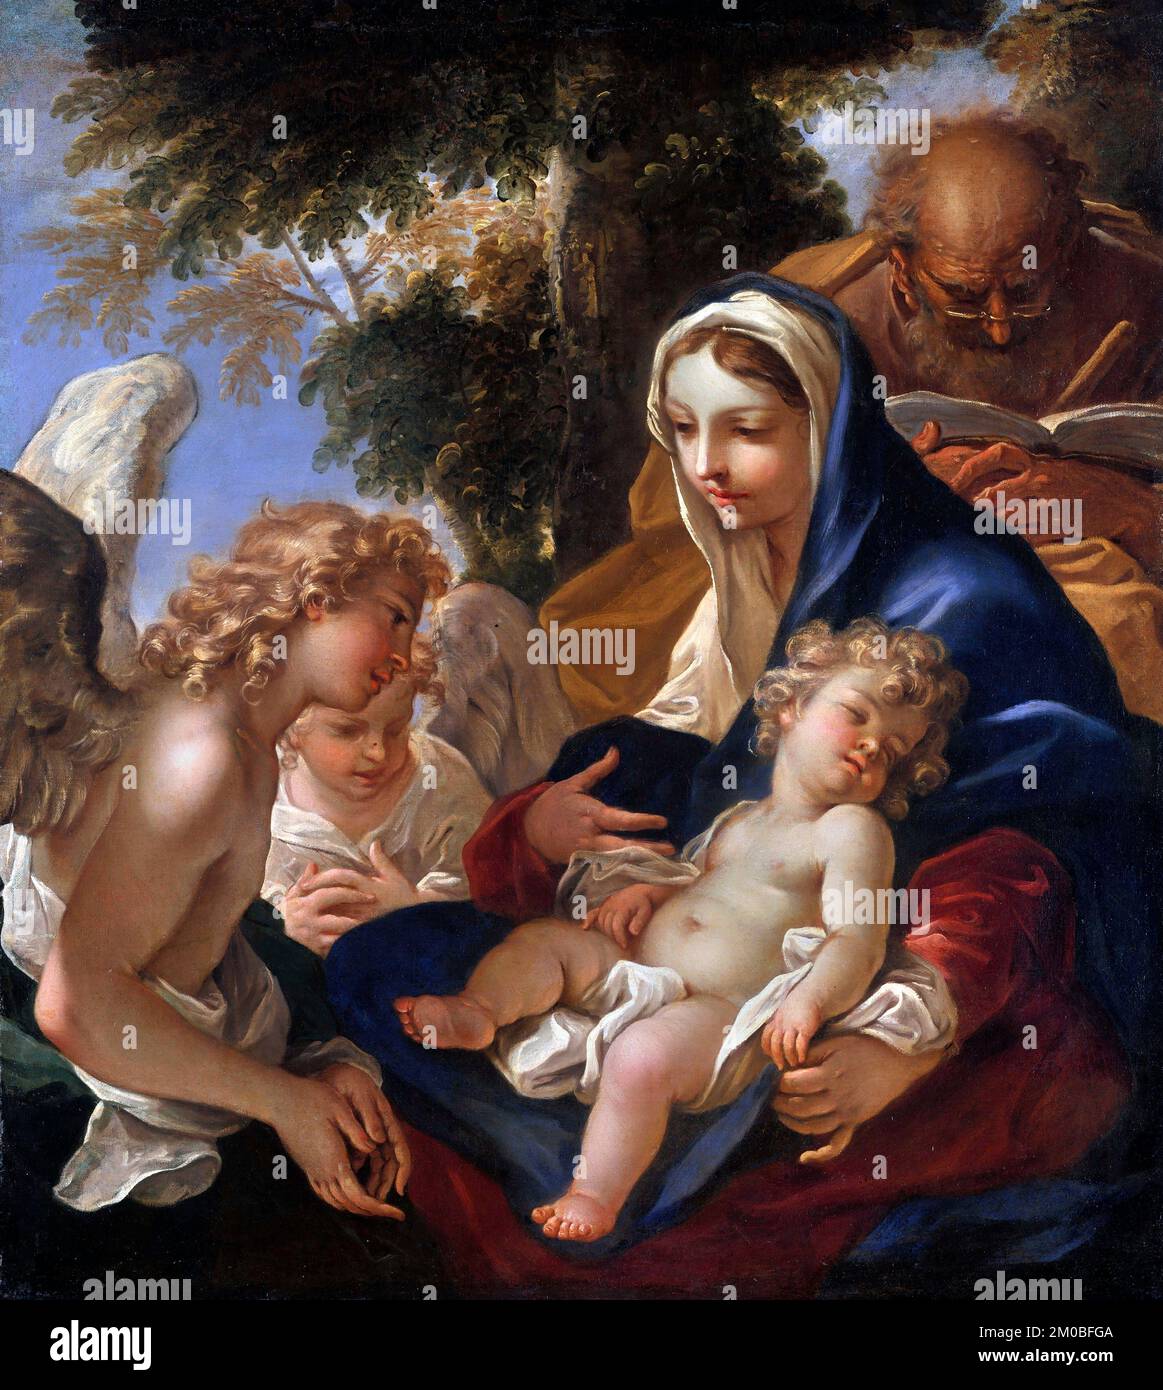 La Sainte famille aux anges de Sebastiano Ricci (1659-1734), huile sur toile, vers 1700 Banque D'Images